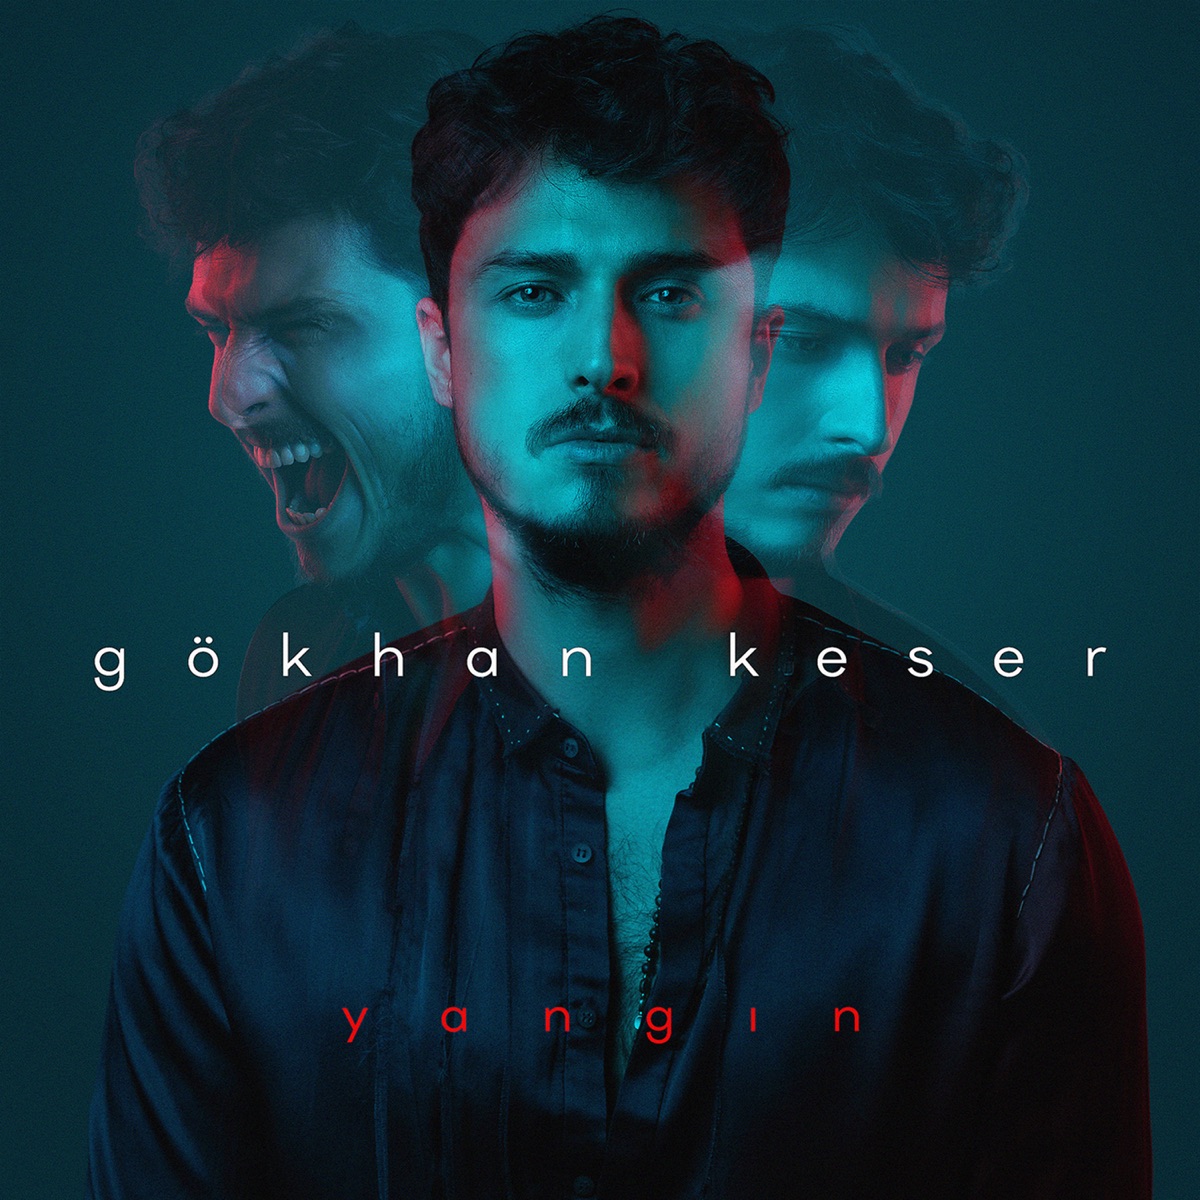 Seninle Bozdum - Single - Album by Gökhan Keser - Apple Music